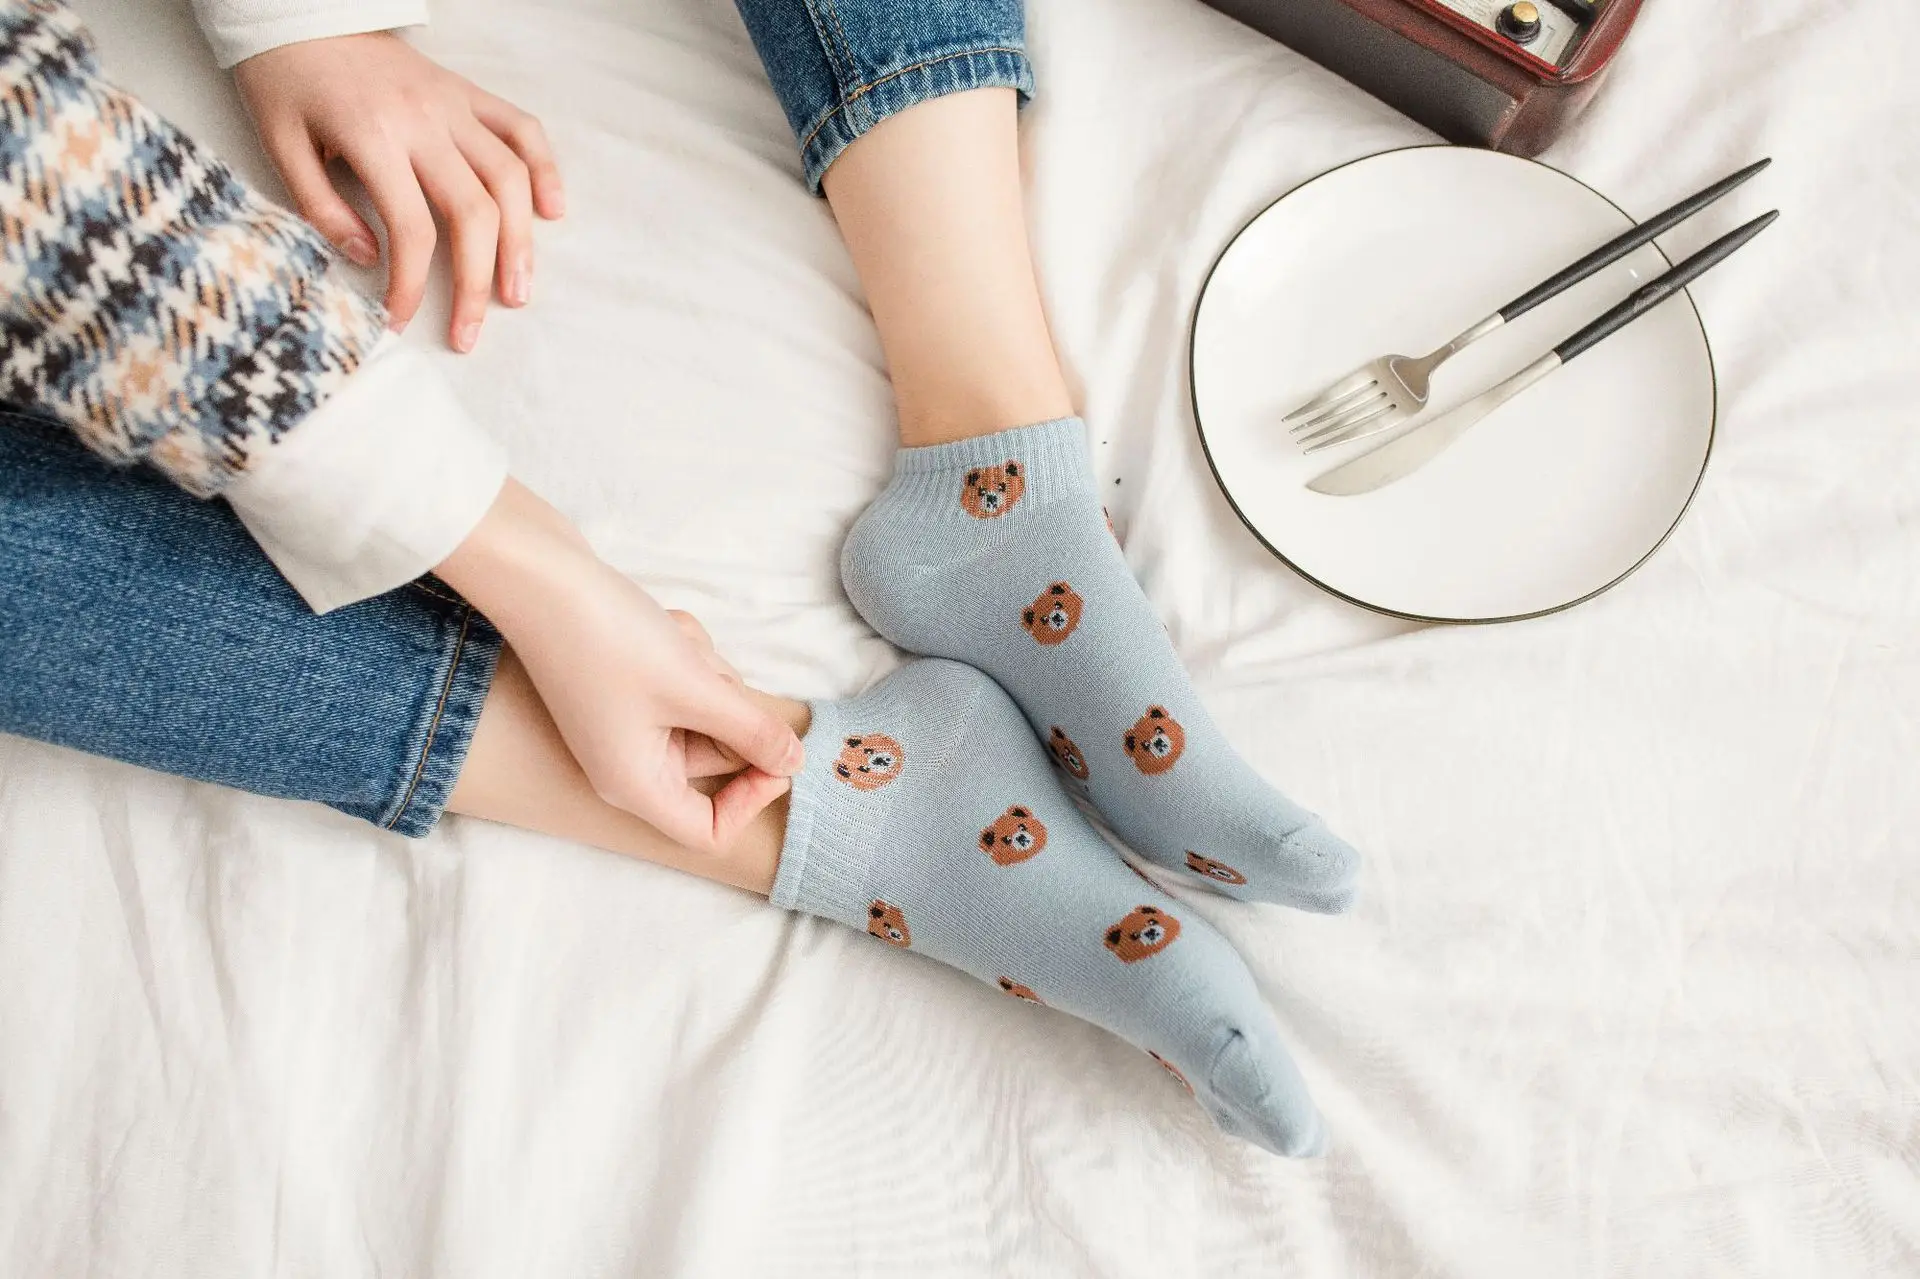 Носки из чистого хлопка в Корейском стиле с медведем для девочек короткие носки всесезонные женские носки-лодочки милые модные носки в японском стиле P